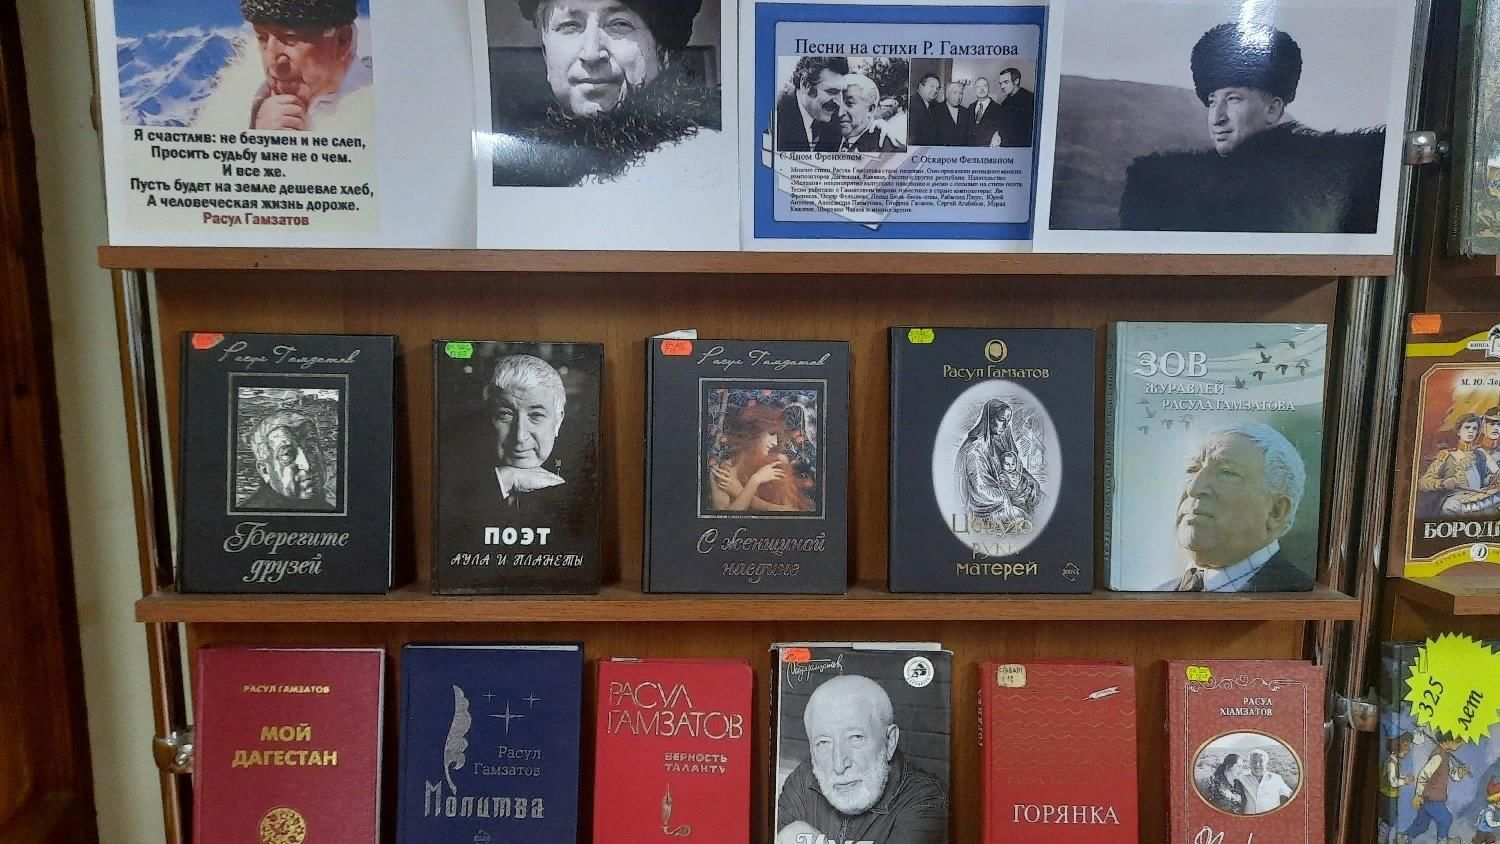 В Жуковке в центральной библиотеке прозвучали стихи Расула Гамзатова в честь 100-летия поэта